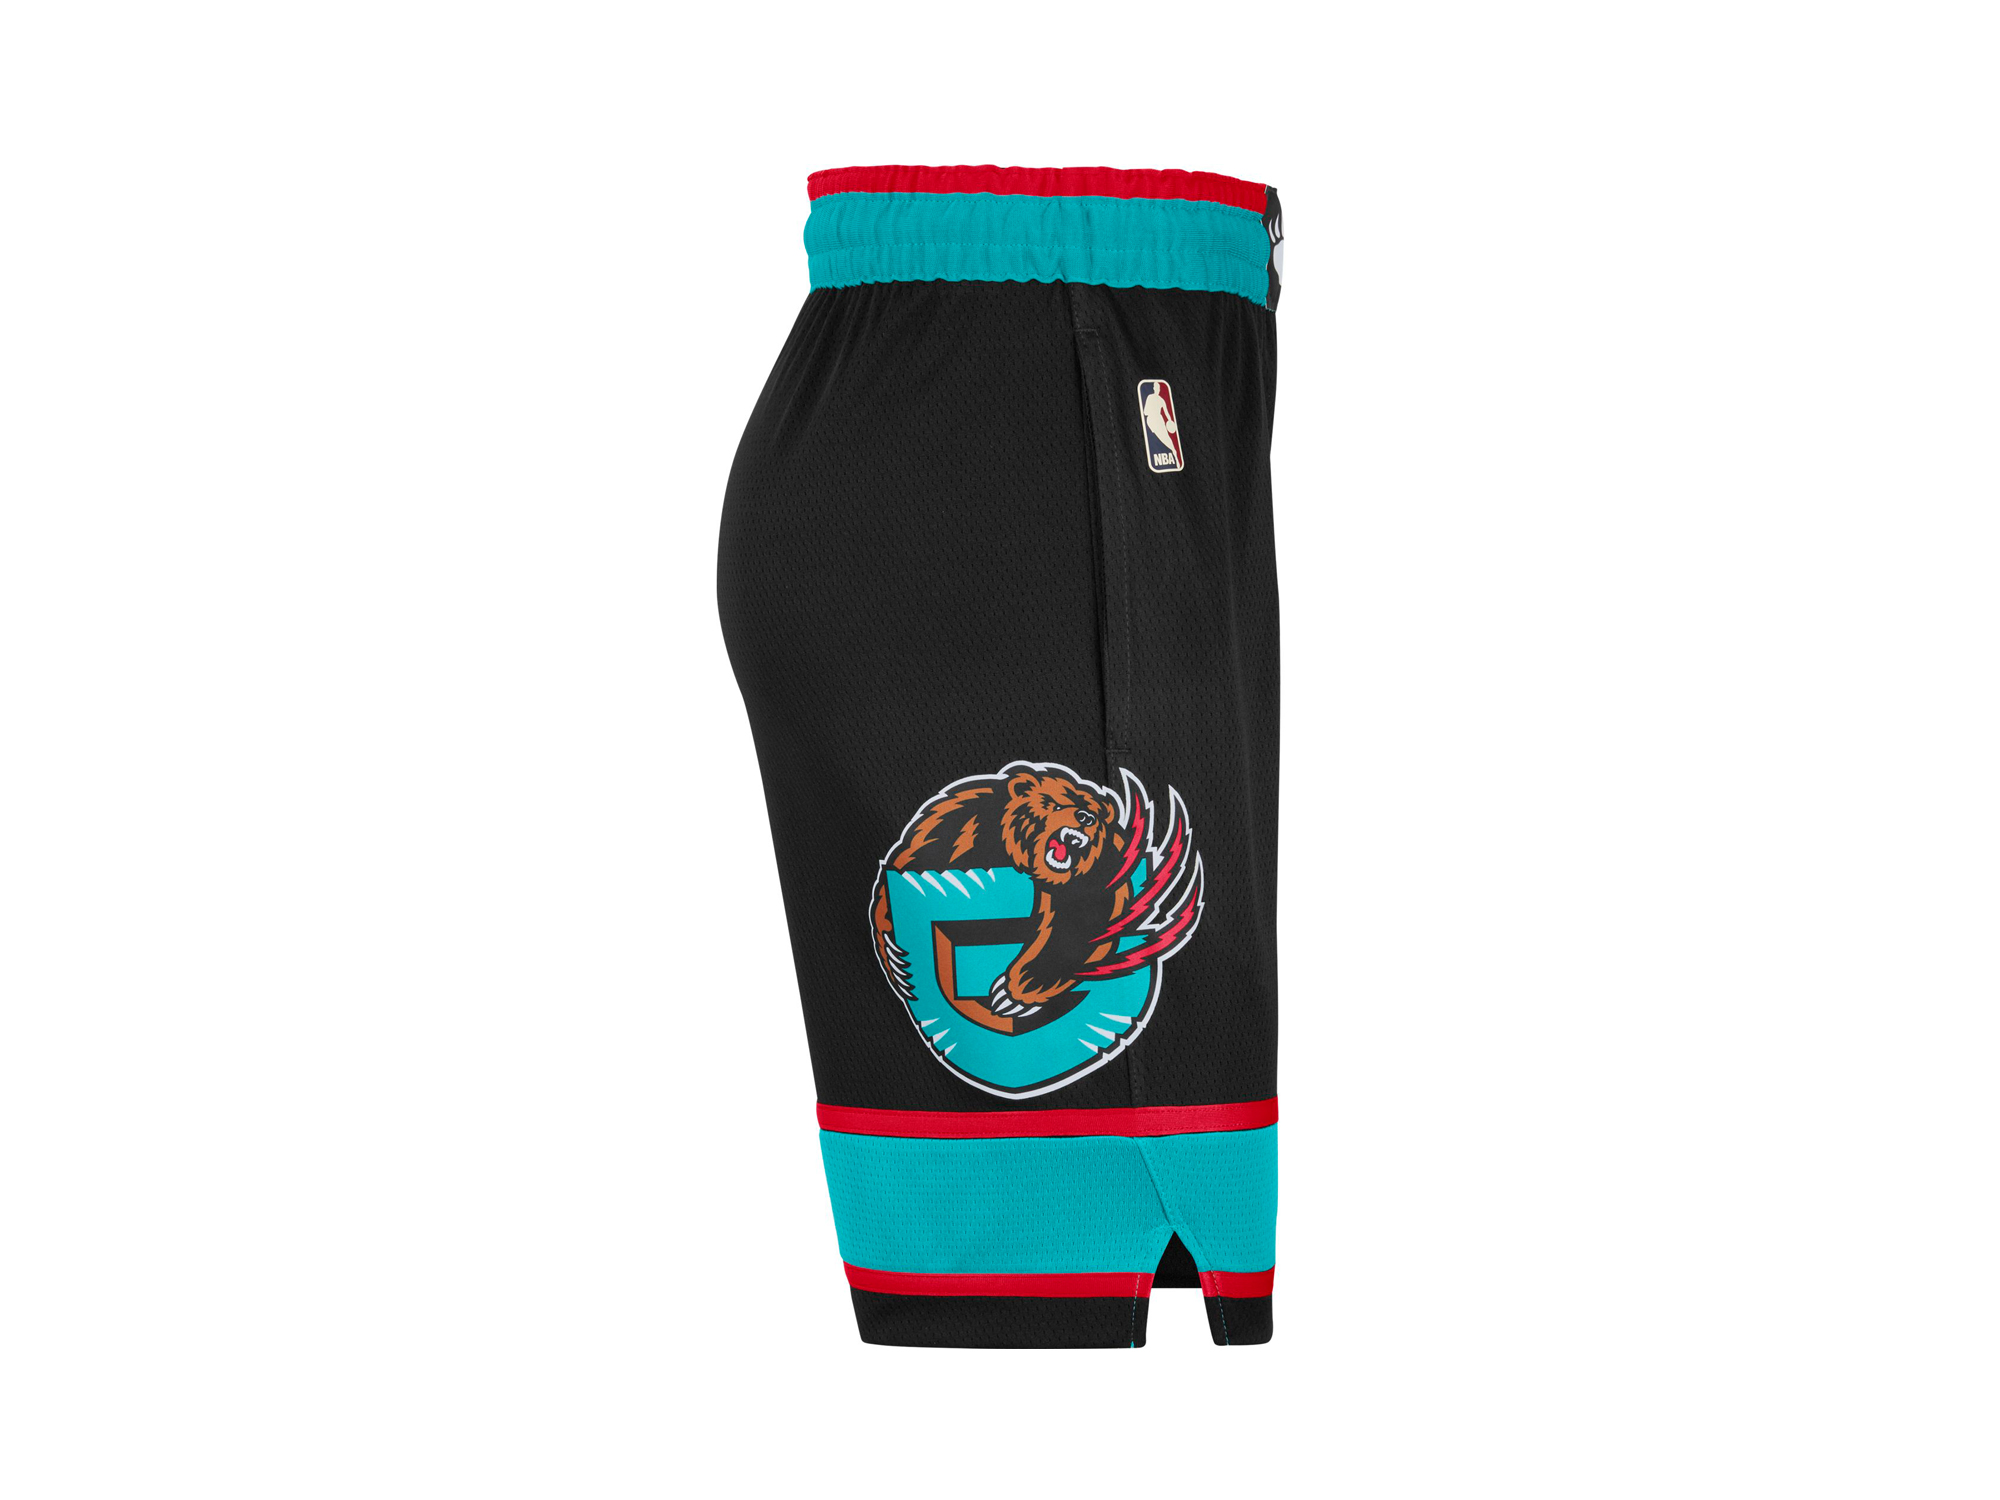 Nike Memphis Grizzlies NBA Classic Edition 2020 Swingman Shorts